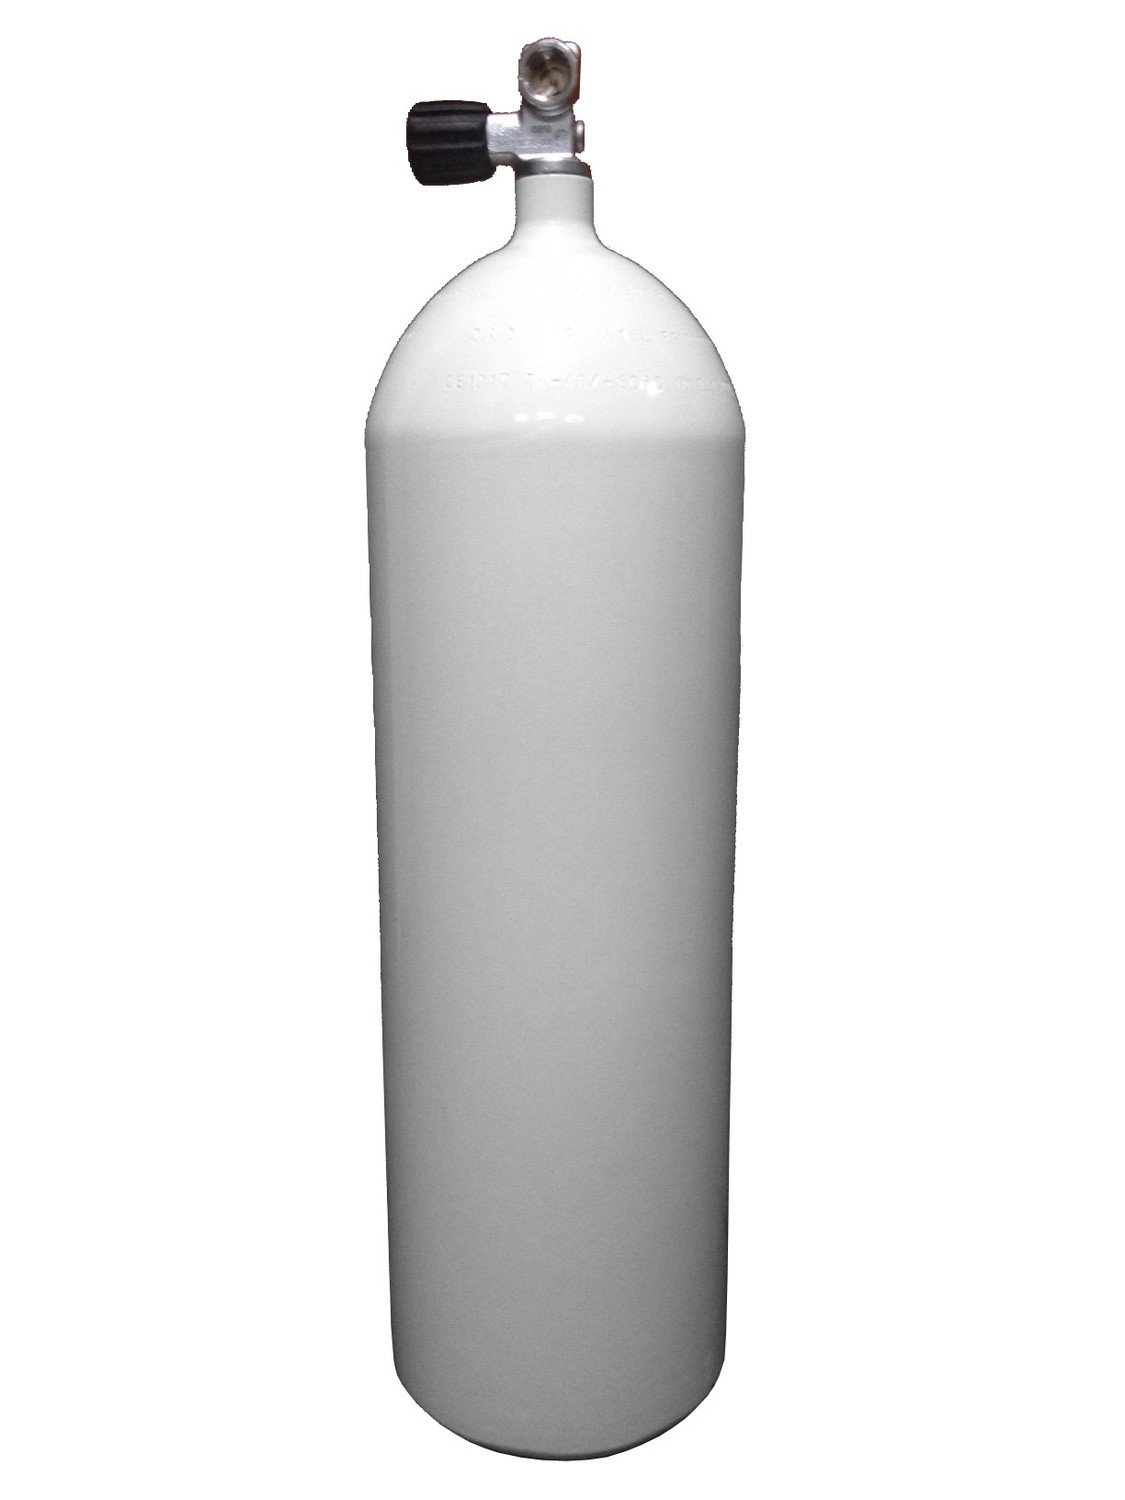 Баллон Eurocylinder 15 L, стальной, вентиль + башмак в комплекте ПОД ЗАКАЗ